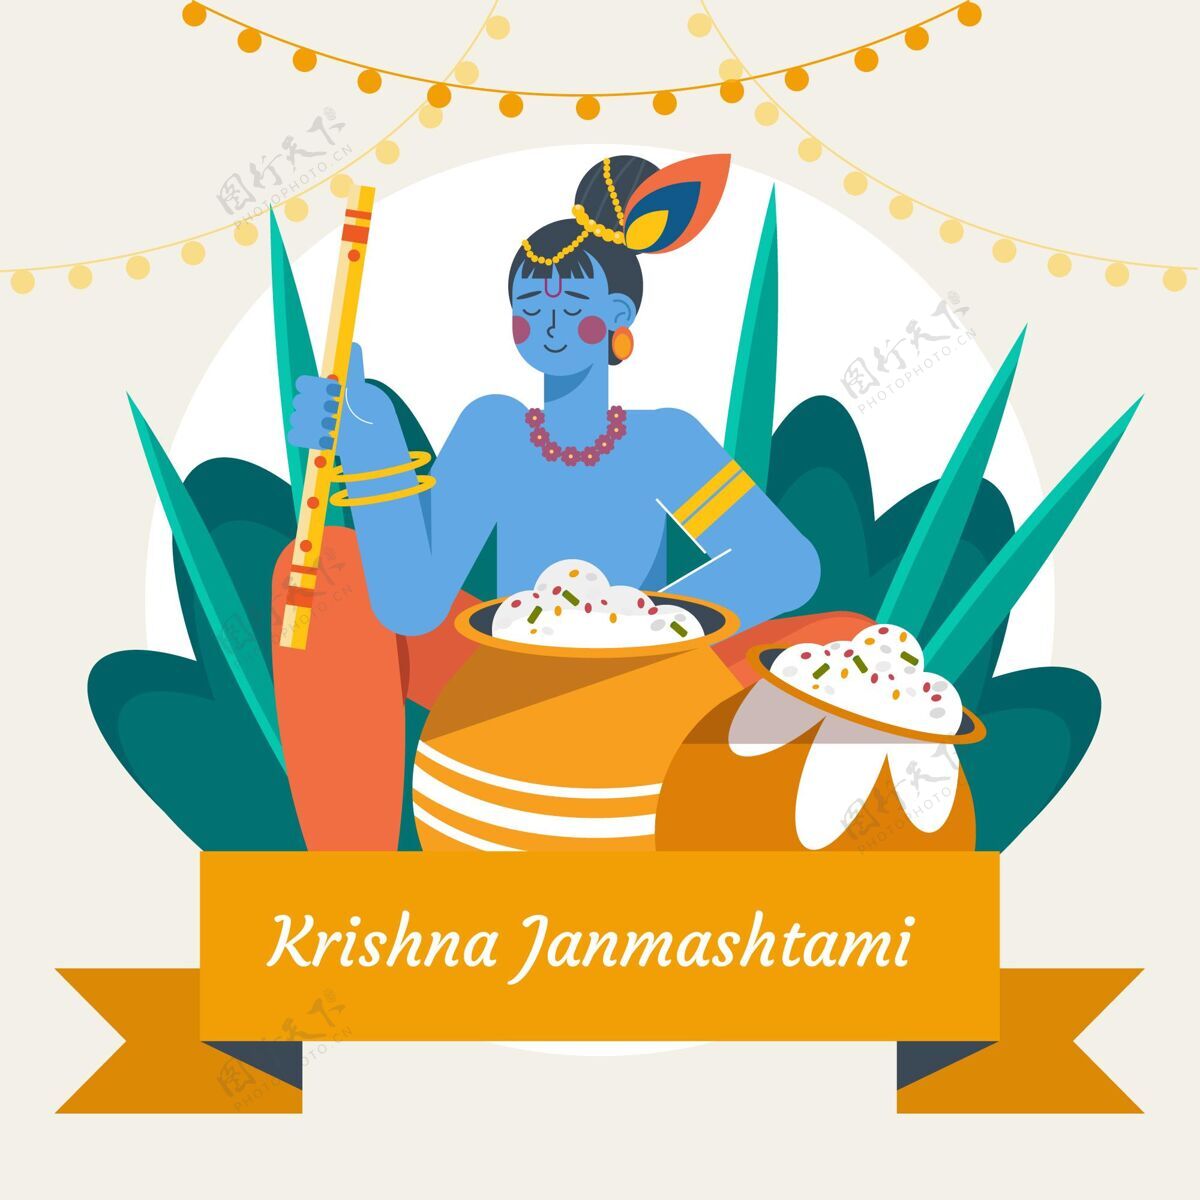 平面设计平面克里希纳janmashtami插图8月31日印度教奎师那简玛斯塔米